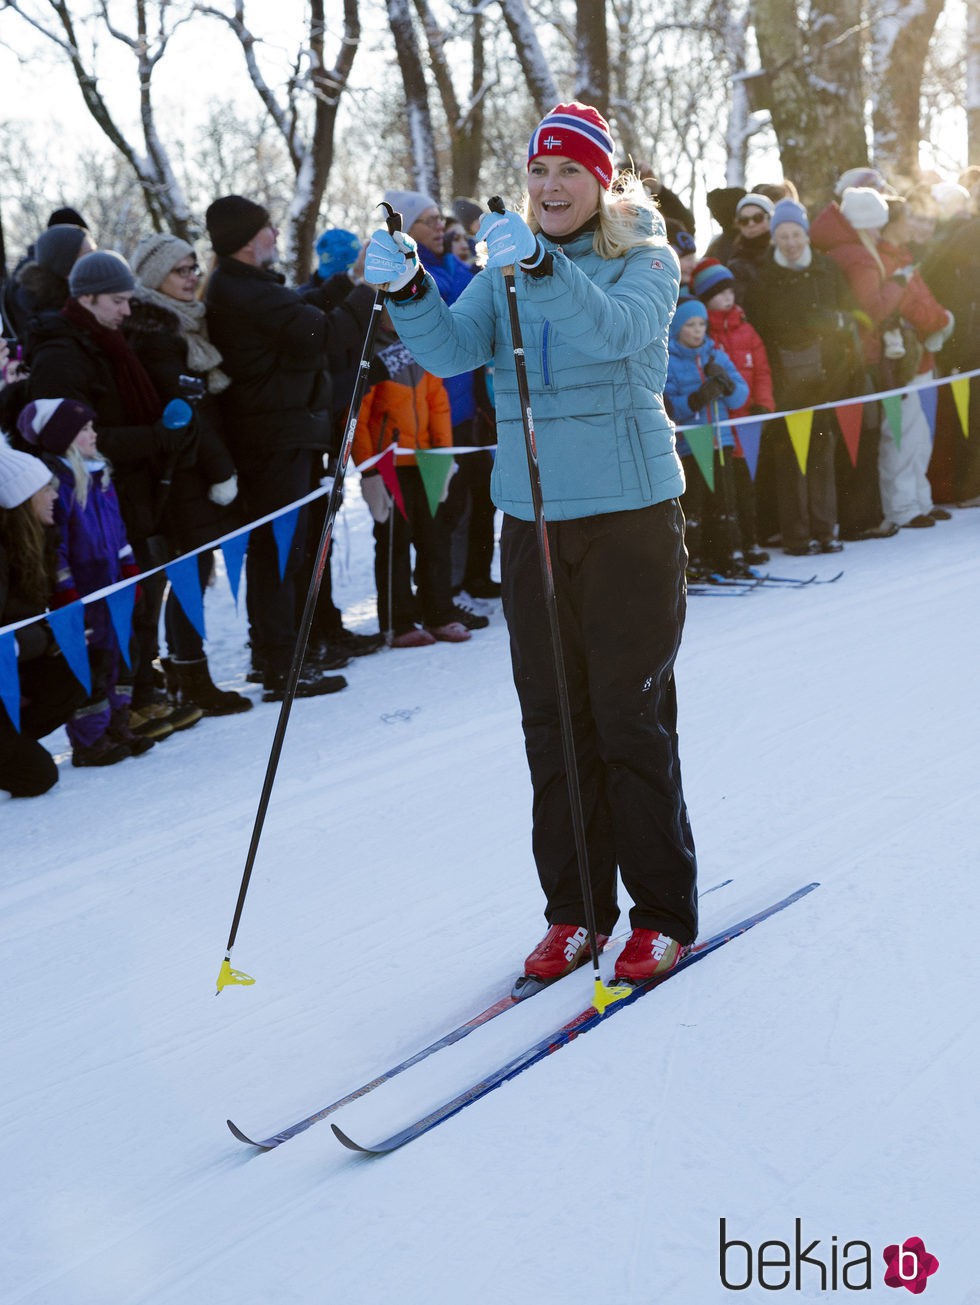 Mette-Marit de Noruega esquiando en las celebraciones del 25 aniversario de reinado de Harald de Noruega